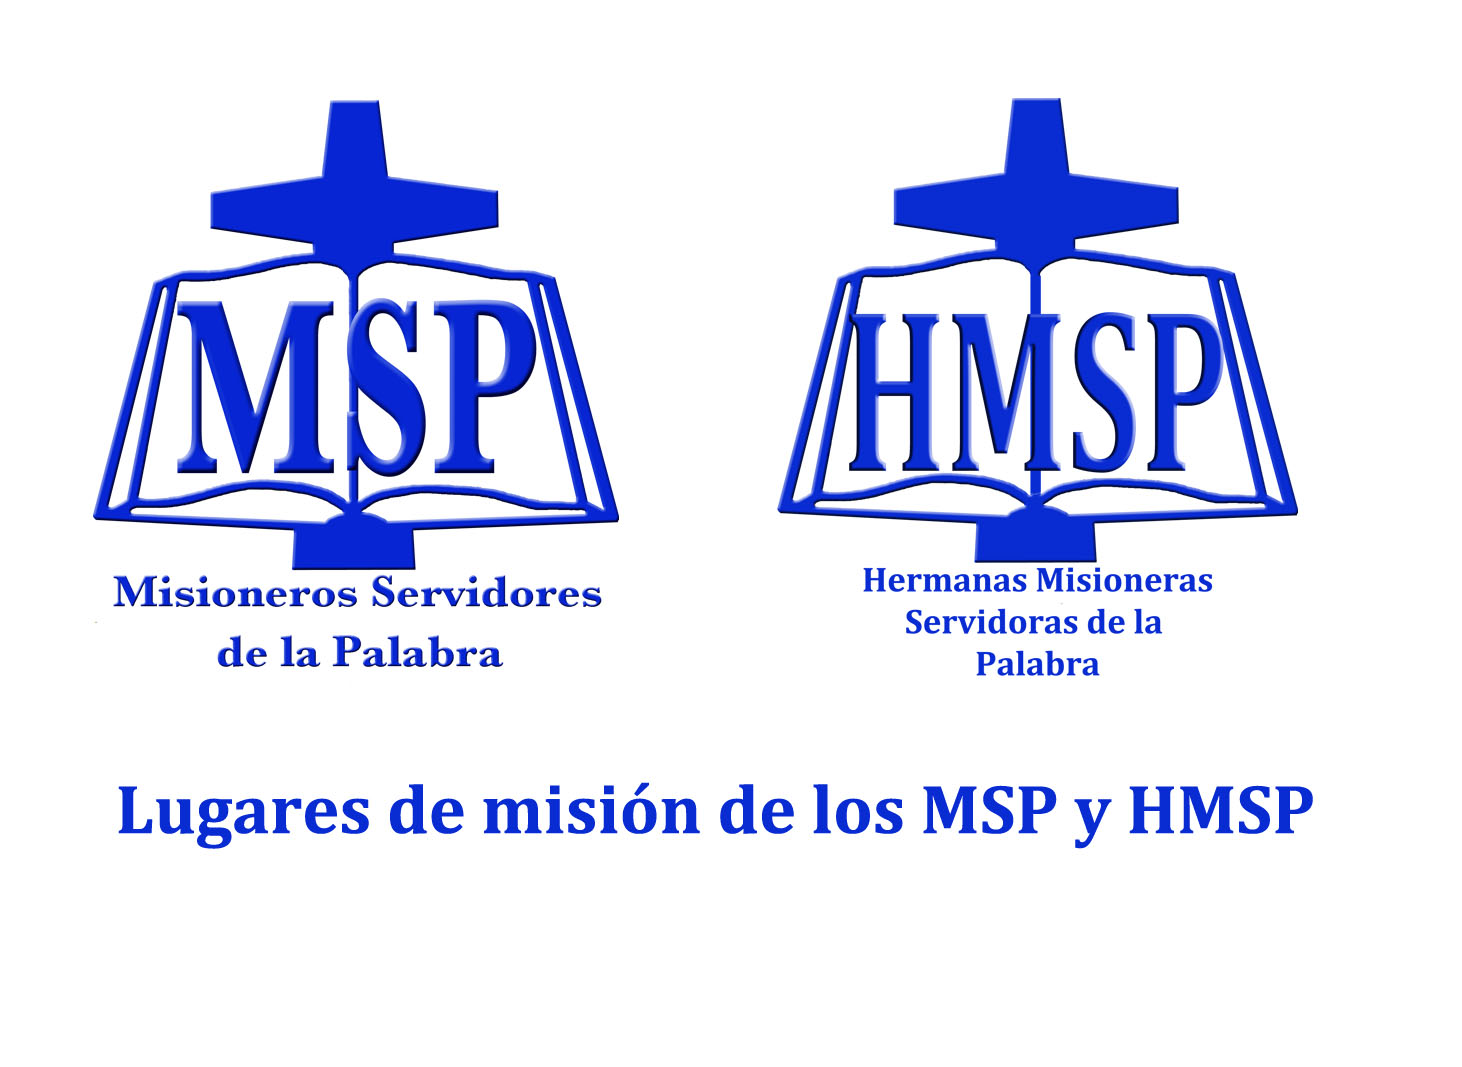 Misioneros MSP: Direcciones de las misiones de los MSP y HMSP